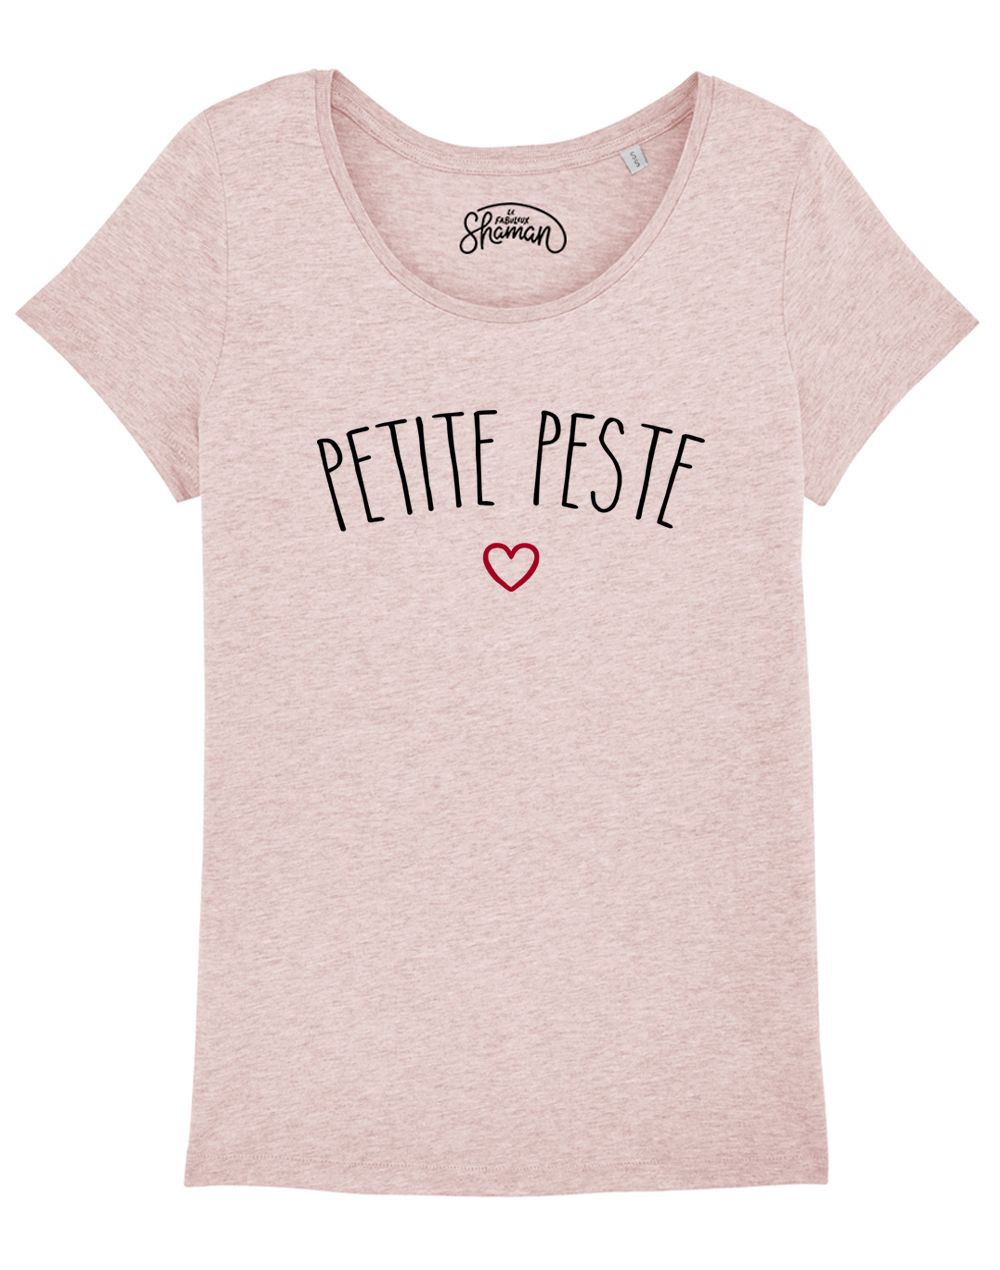 T-shirt "Petite peste"